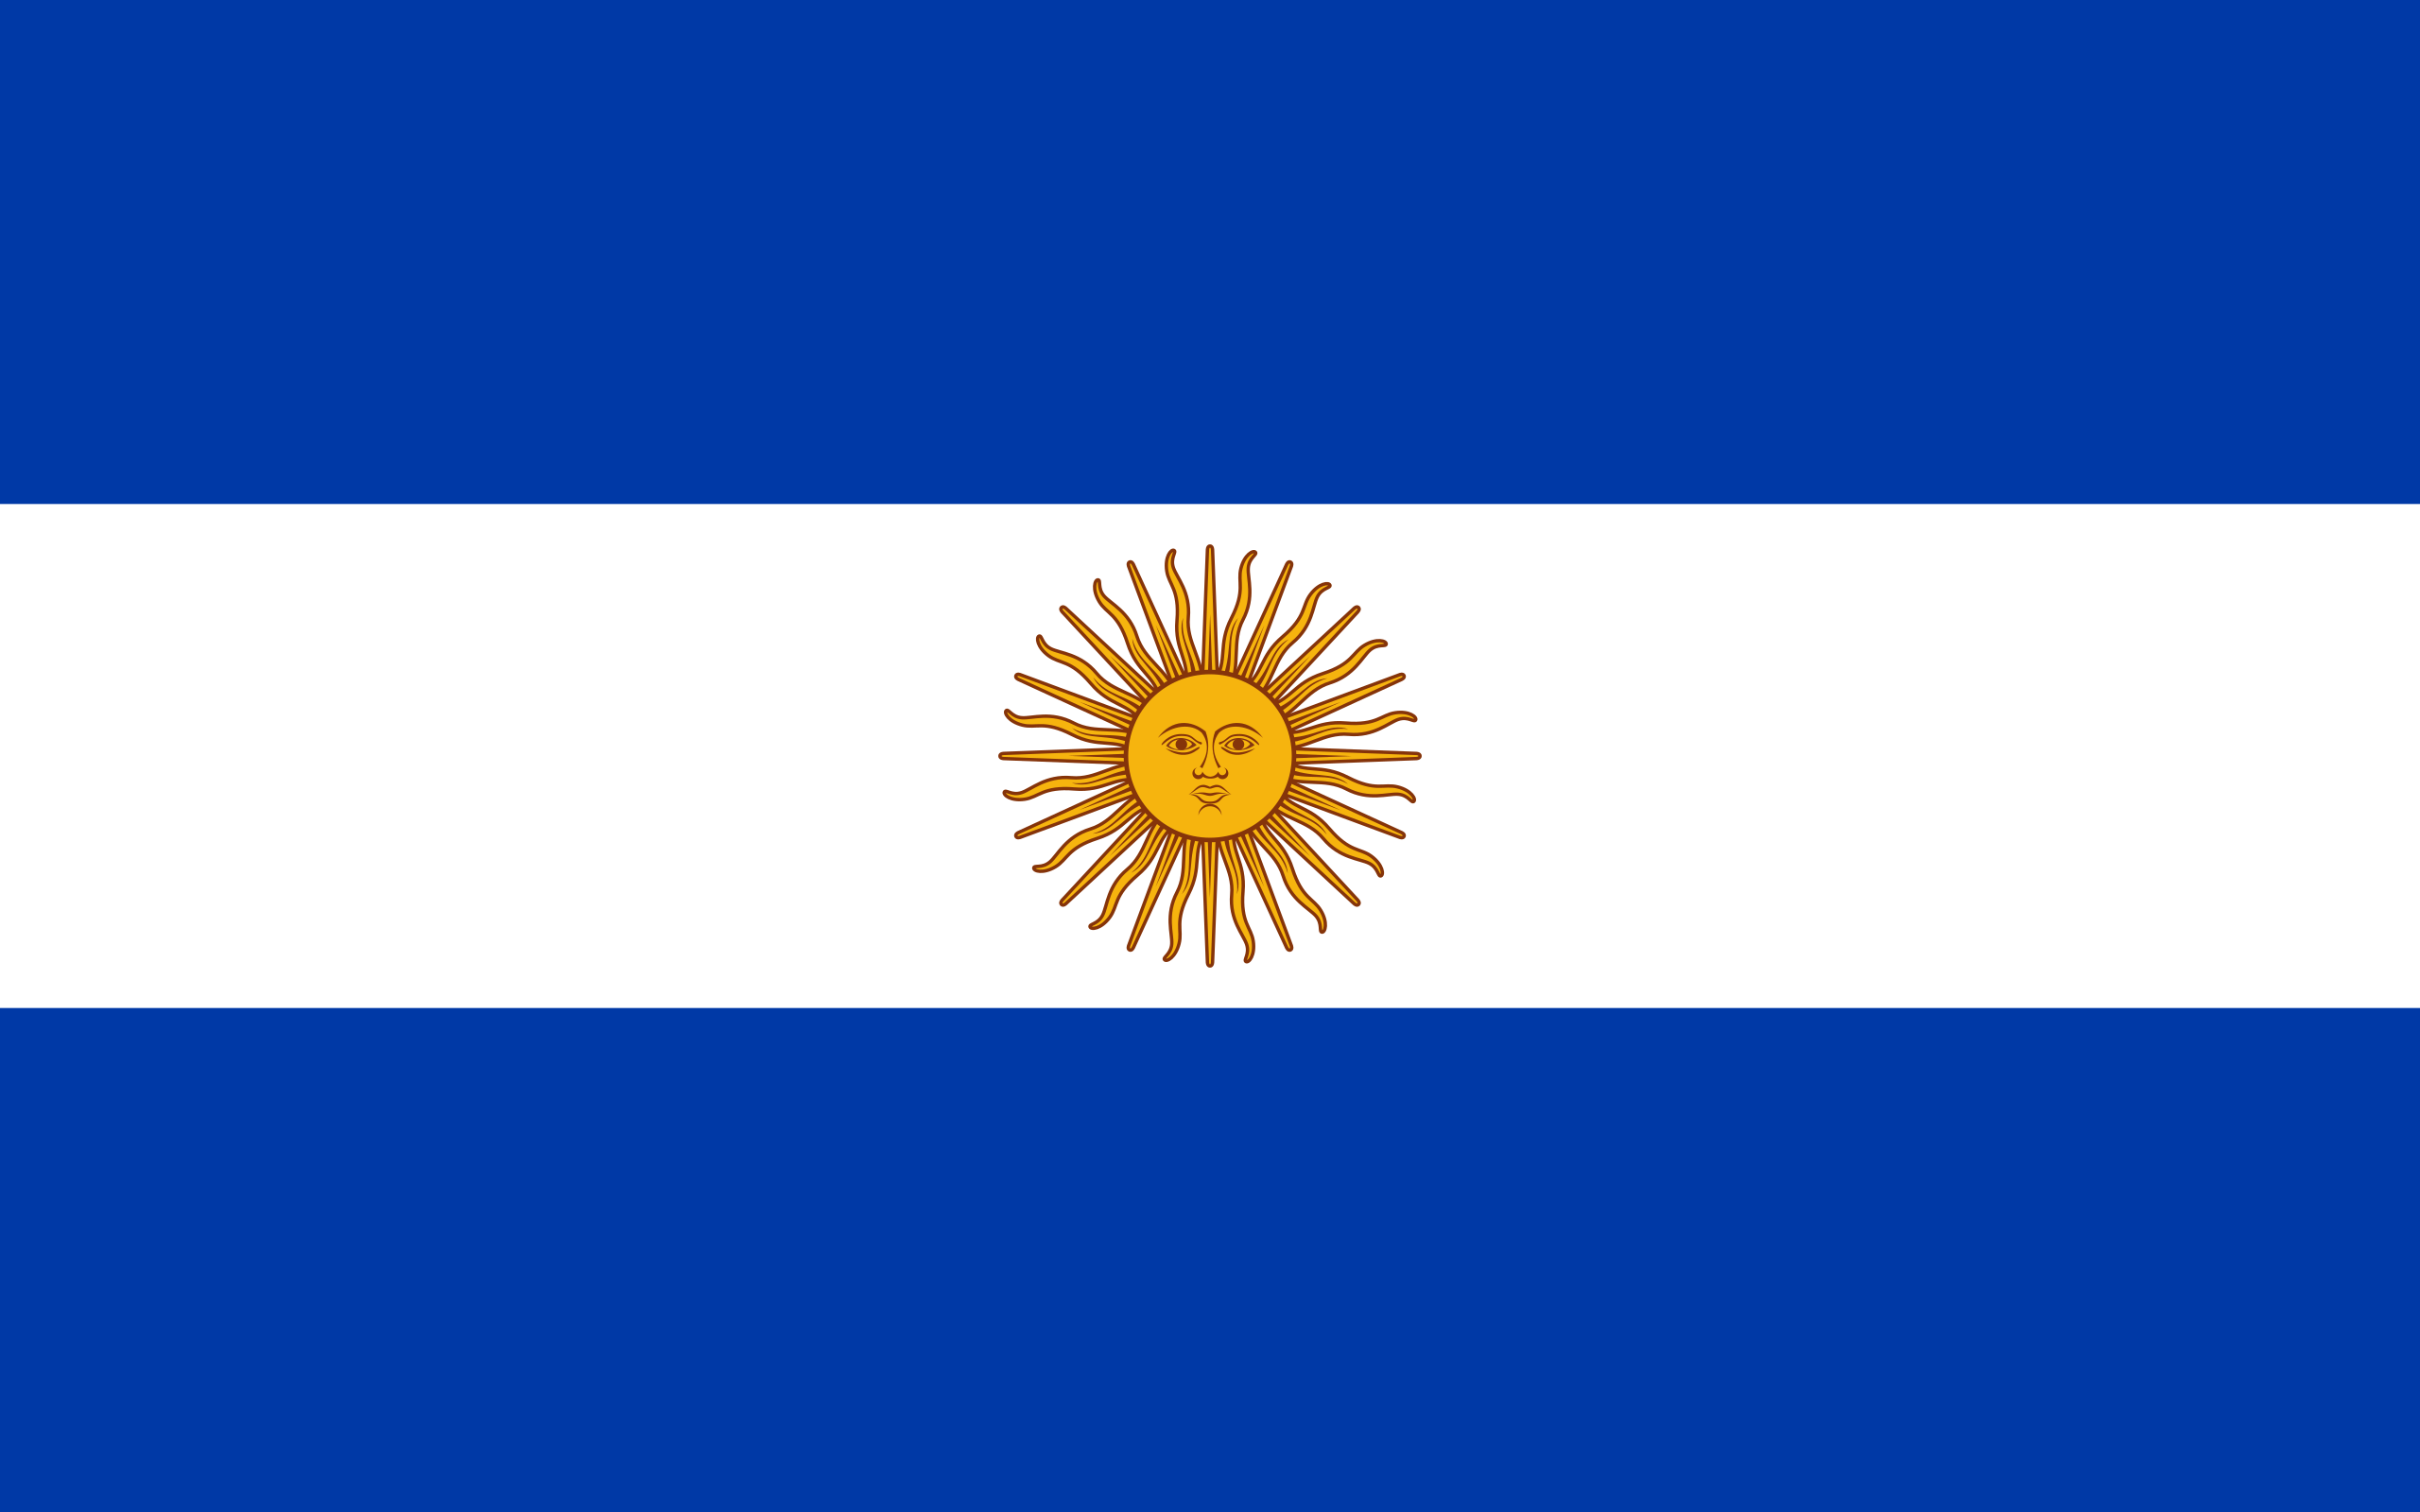 Argentina Flag Picture - Argentina Flag Background - Argentina Flag Design - Argentina Flag Size - Argentina Flag Background - Argentina flag picture - NeotericIT.com